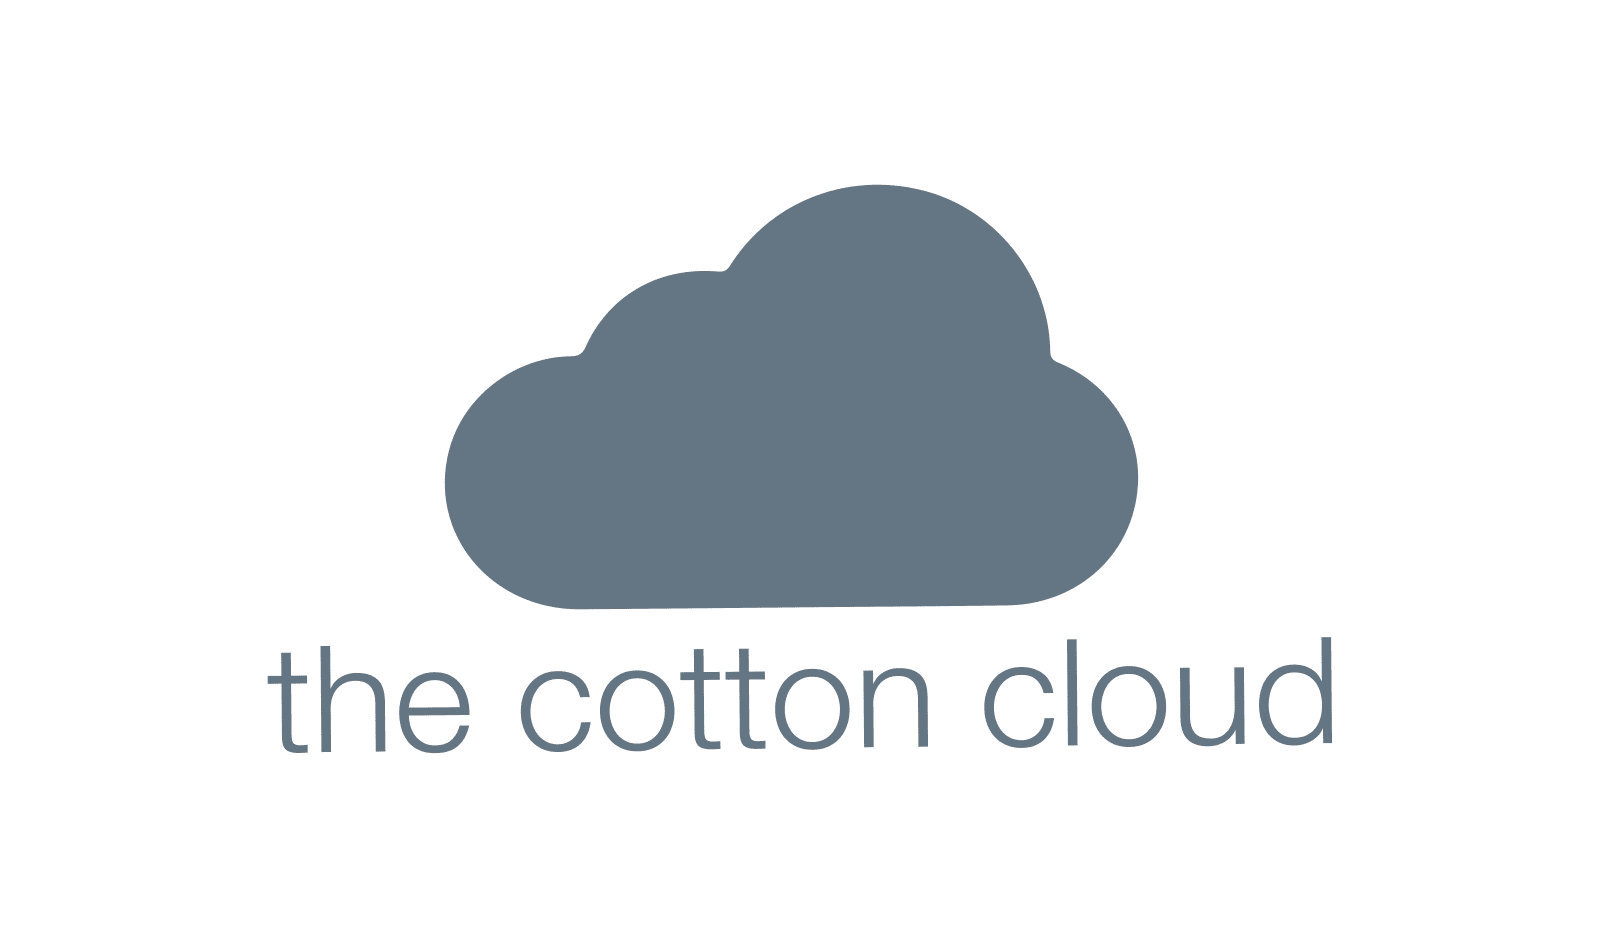 the cotton cloud